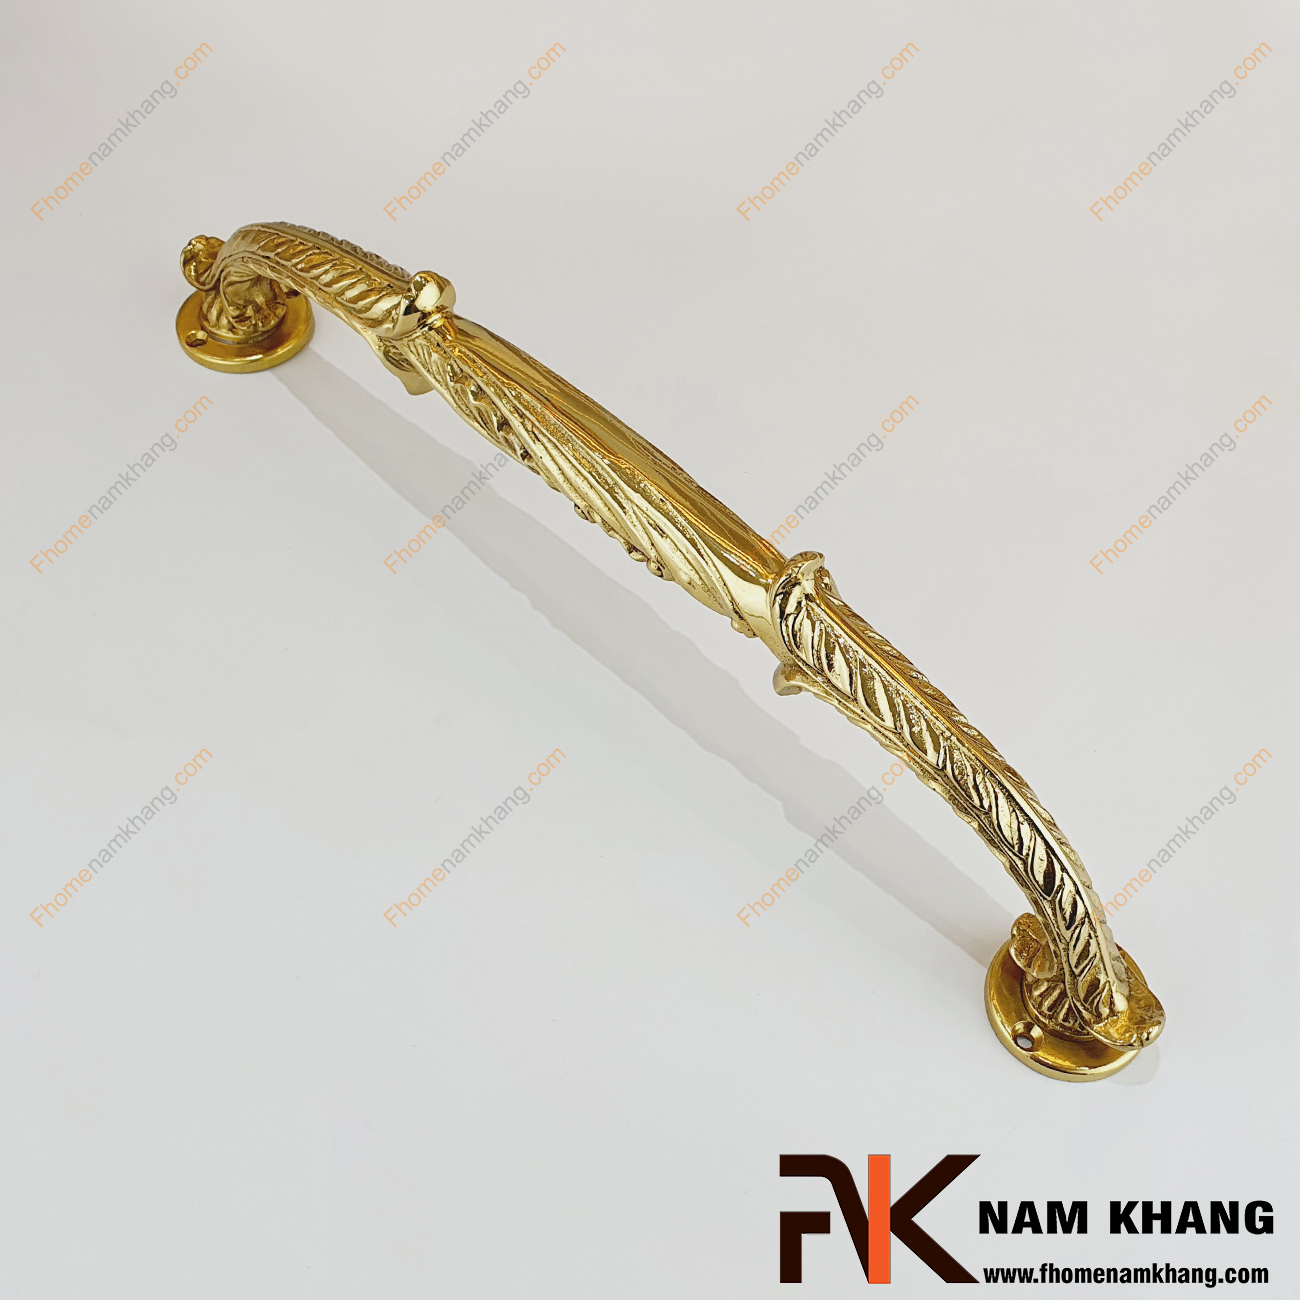 Tay nắm cửa chính màu đồng vàng bằng đồng NKD123-V là dạng tay nắm sản xuất từ chất liệu đồng cao cấp. Sản phẩm có thể bắt đối xứng 2 bên cánh cửa hoặc sử dụng lắp đặt 1 tay bên trong và 1 tay bên ngoài tùy thuộc vào nhu cầu của khách hàng.